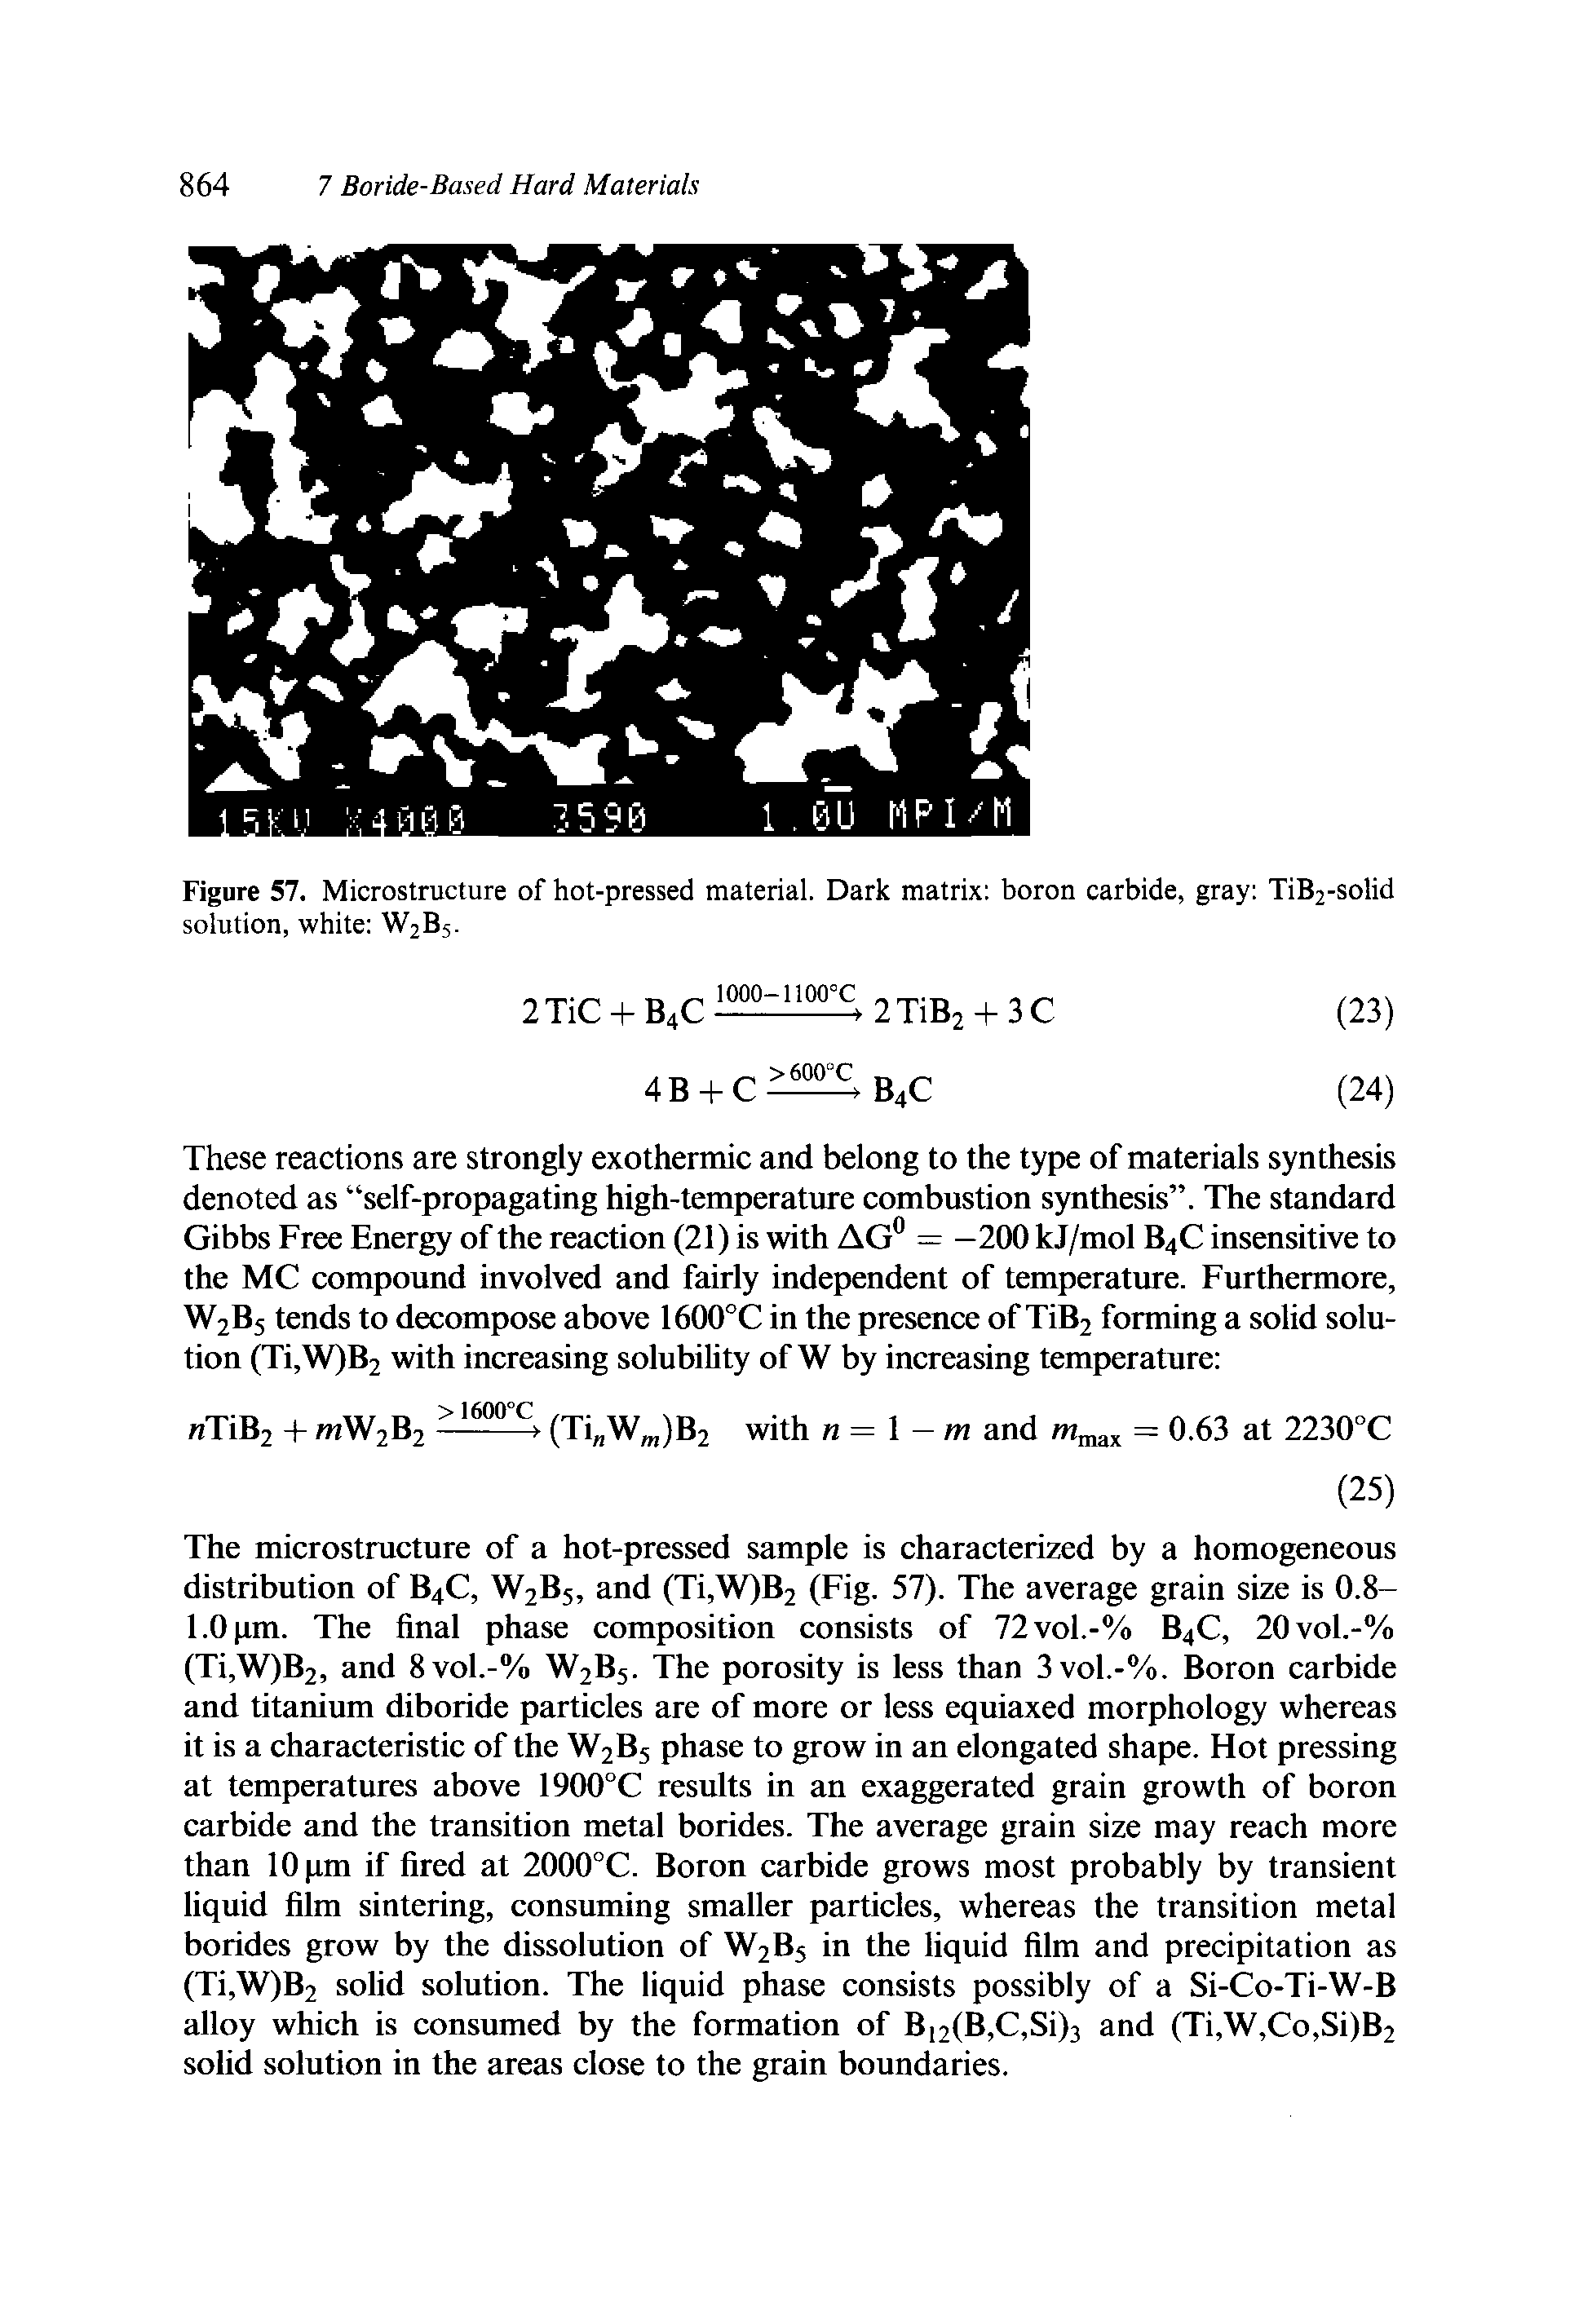 Figure 57. Microstructure of hot-pressed material. Dark matrix boron carbide, gray TiB2-solid solution, white W2B5.